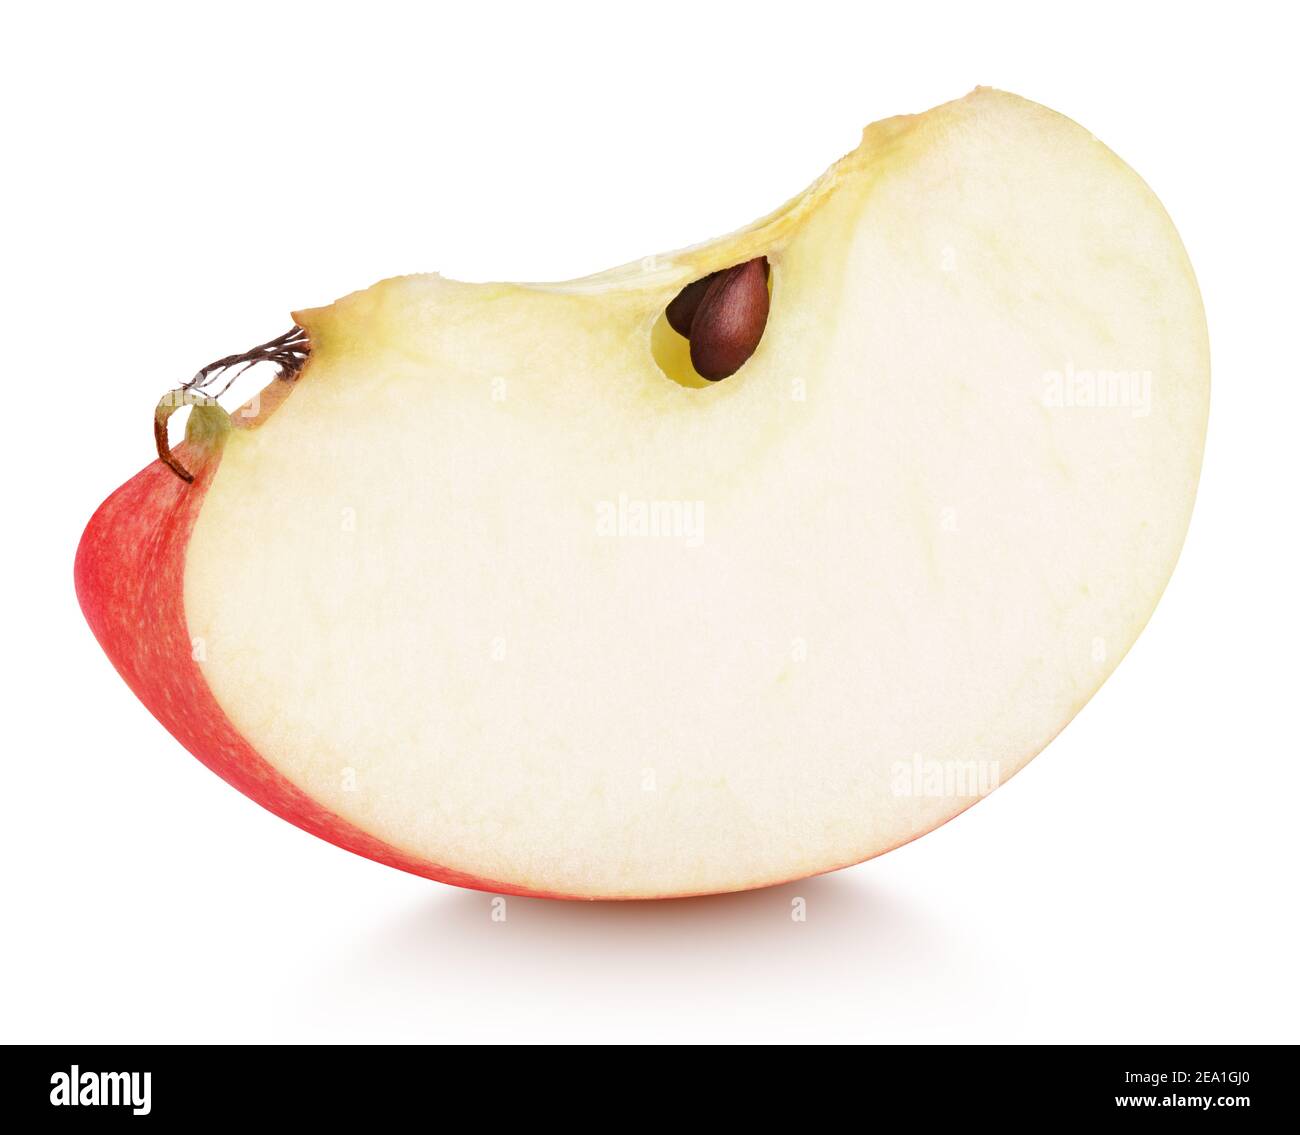 Tranche de fruit de pomme rouge isolée sur fond blanc avec ombre. Coin de pomme rouge avec graines Banque D'Images